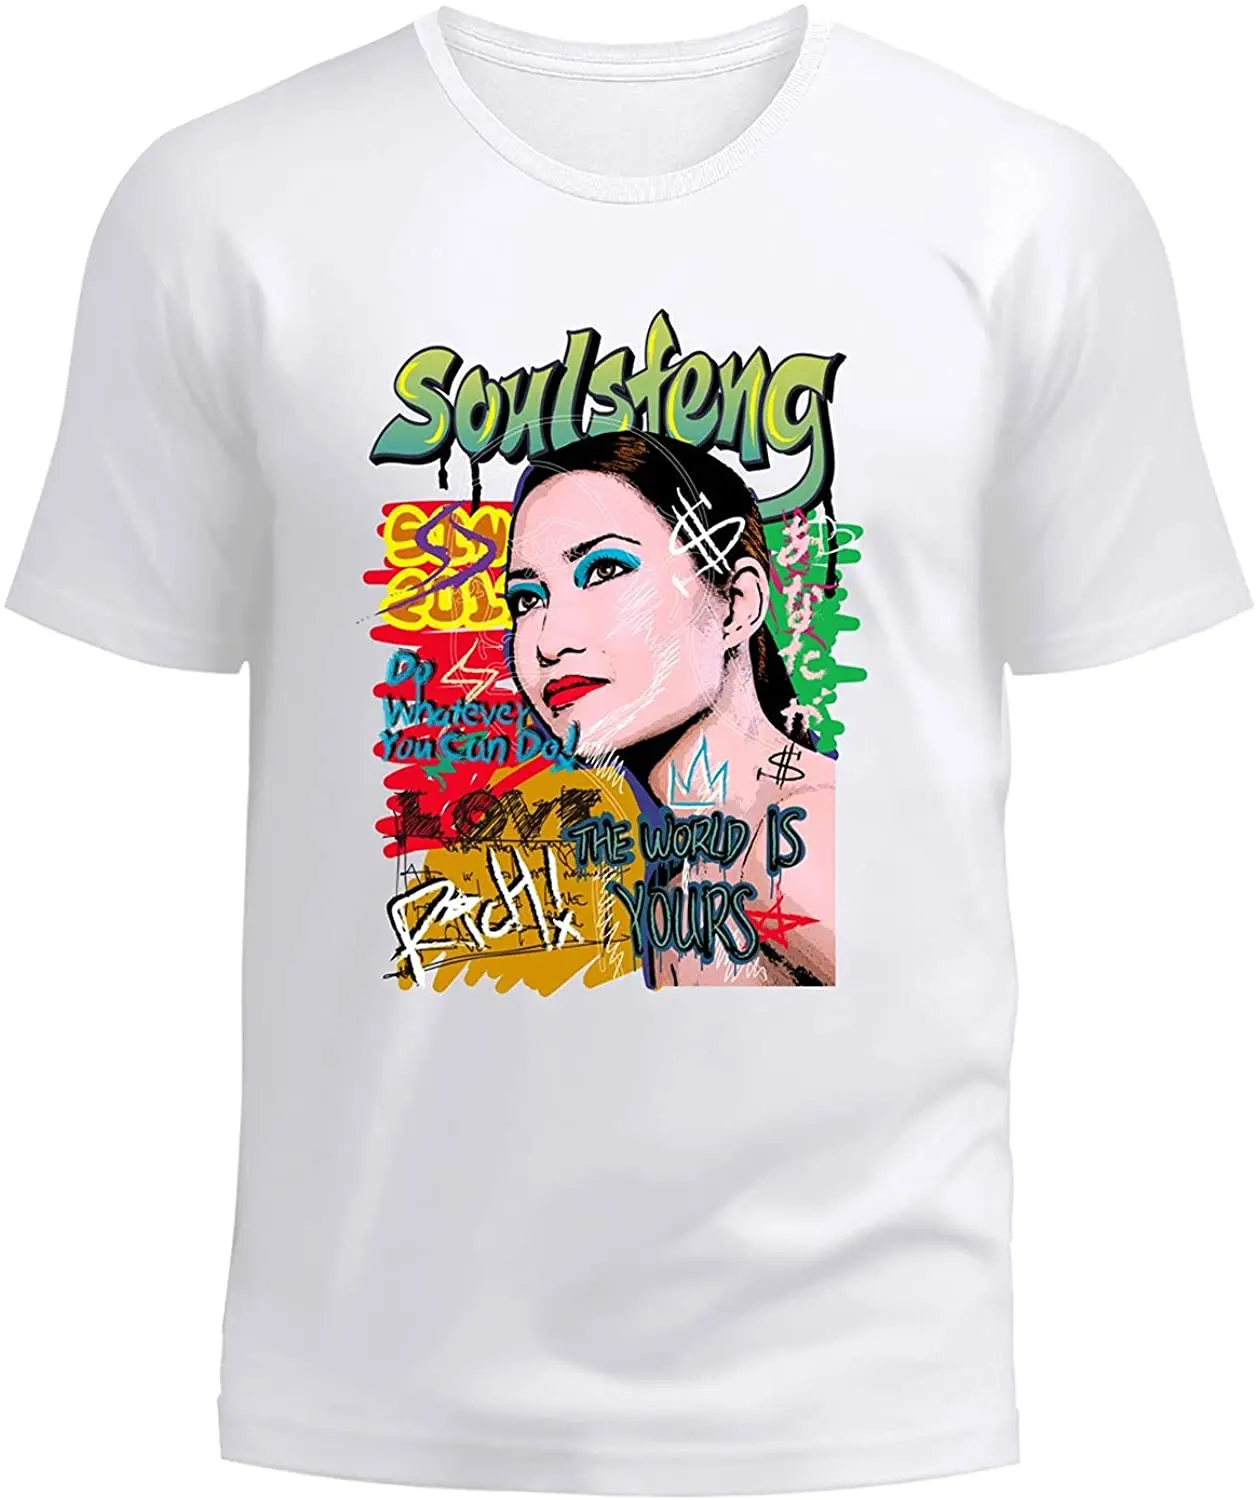 

Мужские футболки с графическим принтом Soulsfeng, Мужская Уличная одежда, графическая футболка, модная женская футболка с граффити/Мир ваш